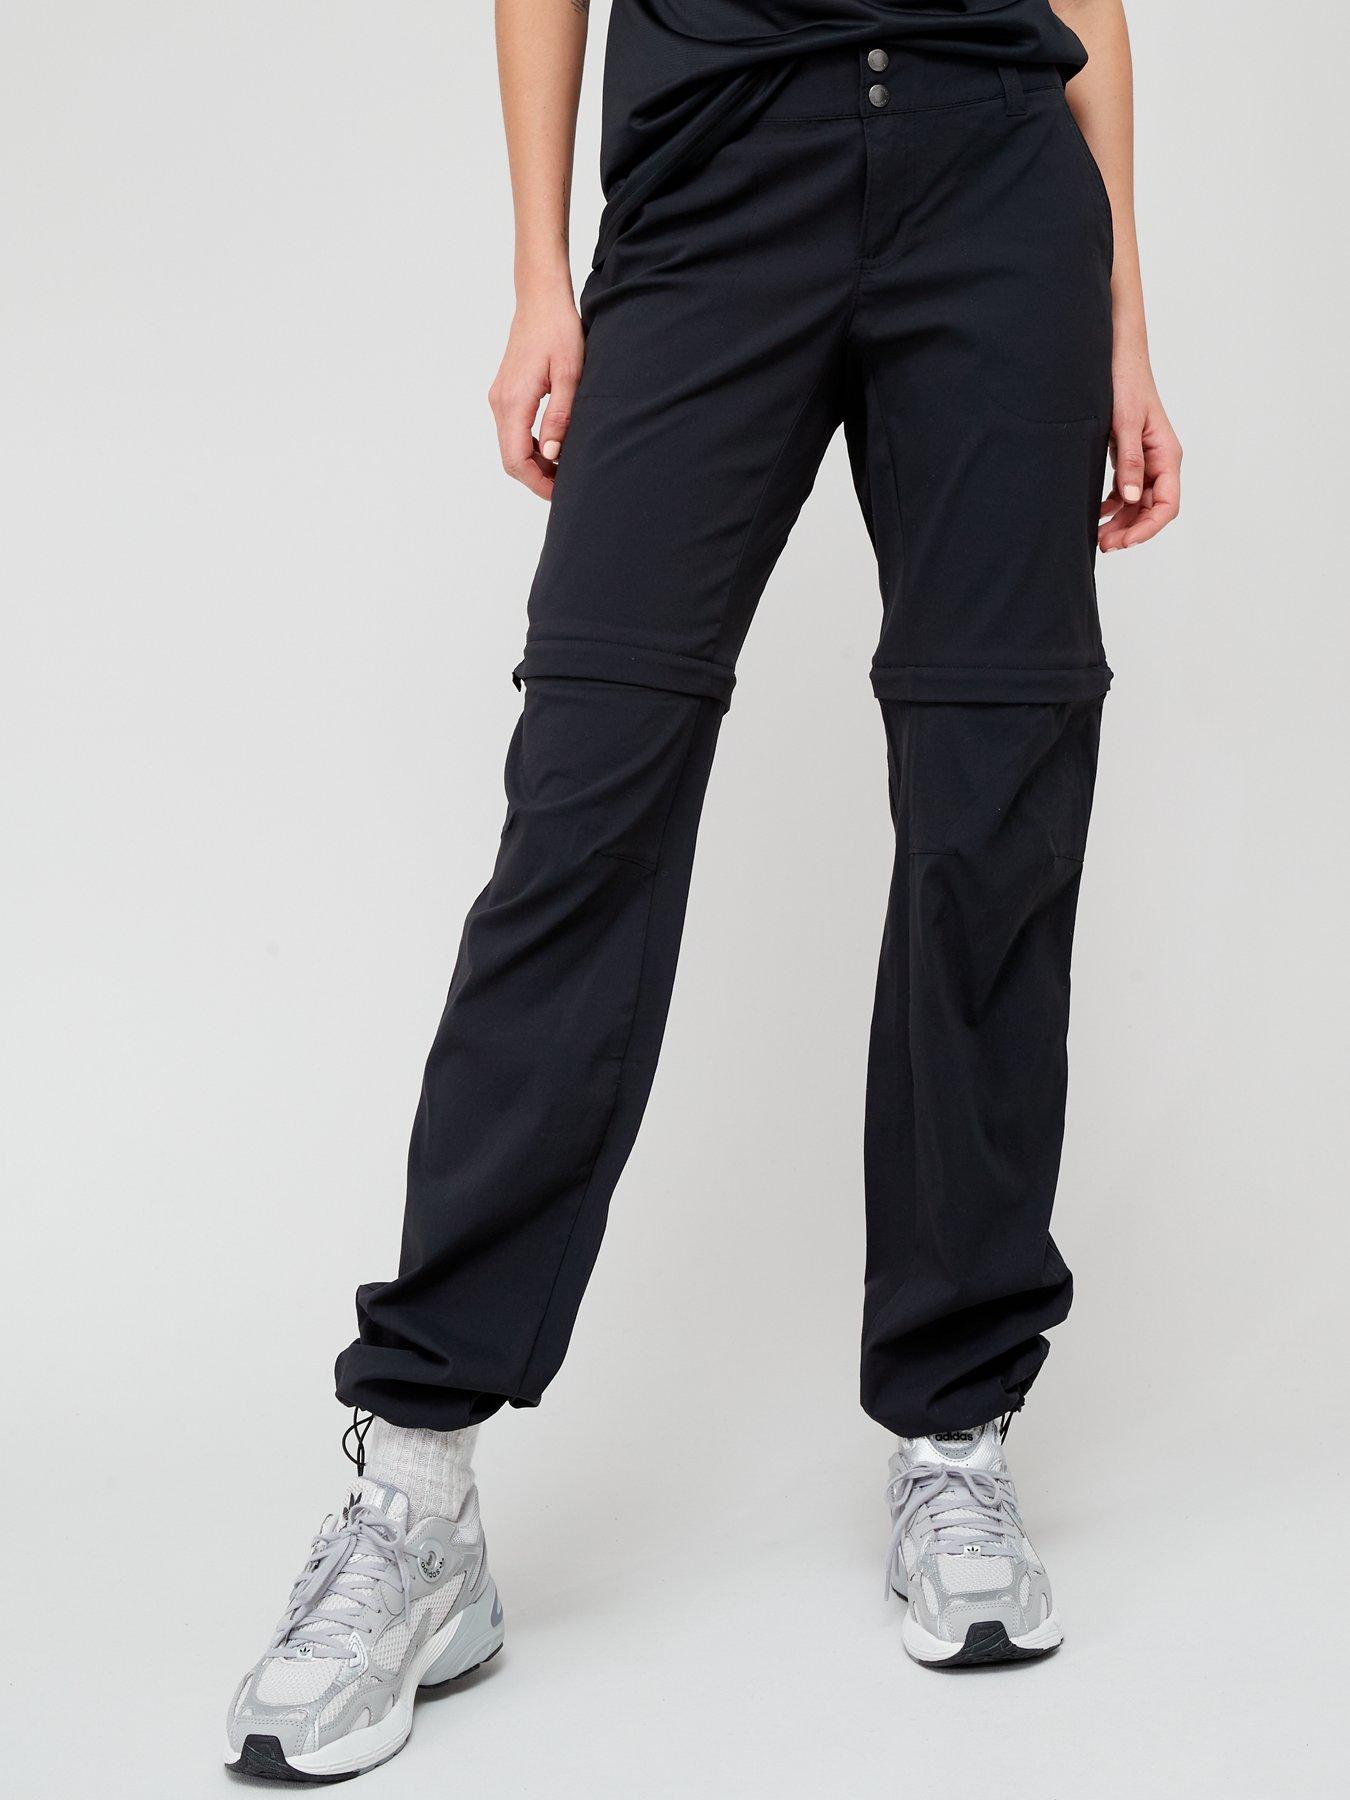 Dare 2b Sleek Full Length Waterproof Ski Pants - Black